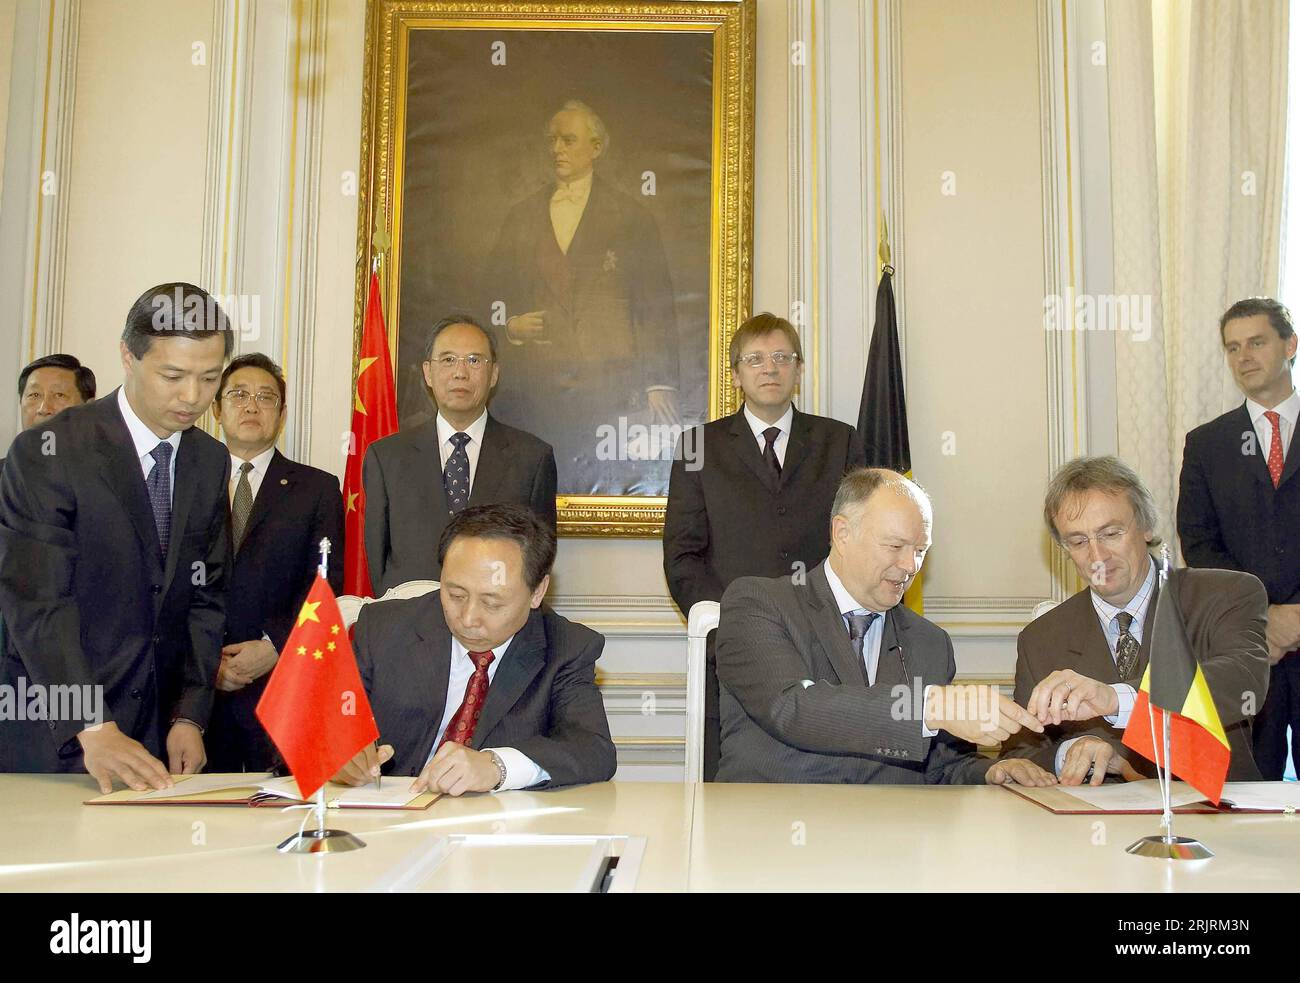 Bildnummer: 51451184  Datum: 21.09.2006  Copyright: imago/Xinhua Kang Rixin (vorn 2.v.l., CHN/Leiter der chinesischen Gesellschaft für Atomindustrie) unterzeichnet mit Frank Deconninck (vorn 2.v.r., BEL/Chef Nuklearforschungszentrum) und Eric van Walle (vorn re., BEL/Generalmanager Nuklearforschungszentrum) in Brüssel unter den Blicken von Premierminister Guy Verhofstadt (hinten 2.v.r., BEL) und Zeng Paiyan (hinten 3.v.r., CHN/Stellvertretender Premierminister) einen Beschluss zur Zusammenarbeit PUBLICATIONxNOTxINxCHN; 2006, Brüssel, Politik, Politiker, Atomenergie , Unternehmensführung , Mana Stock Photo